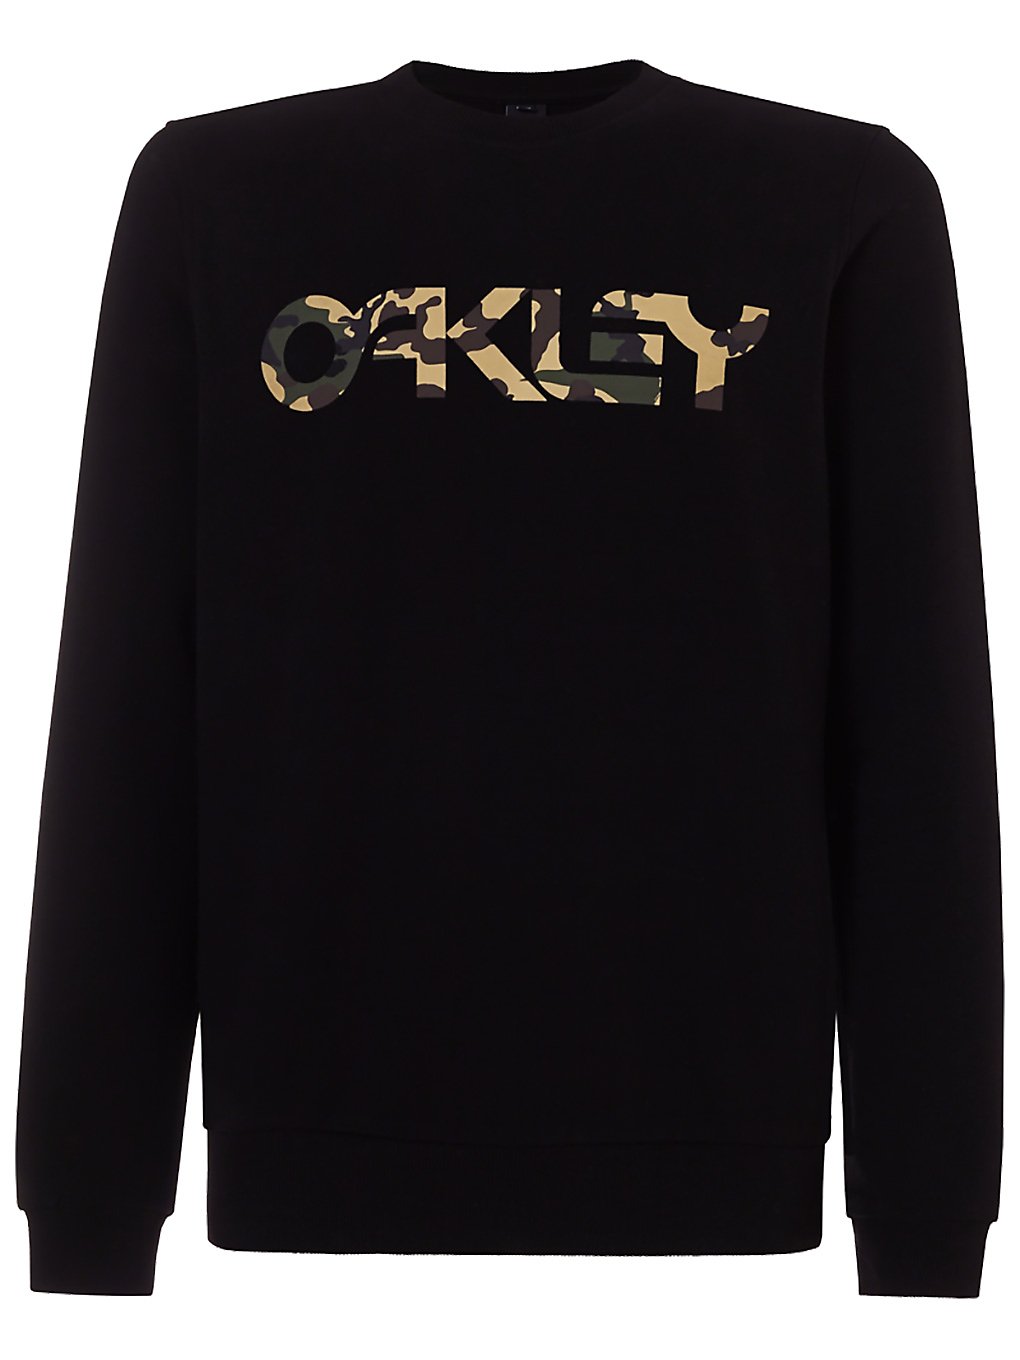 Oakley b1b crew sweater musta, oakley